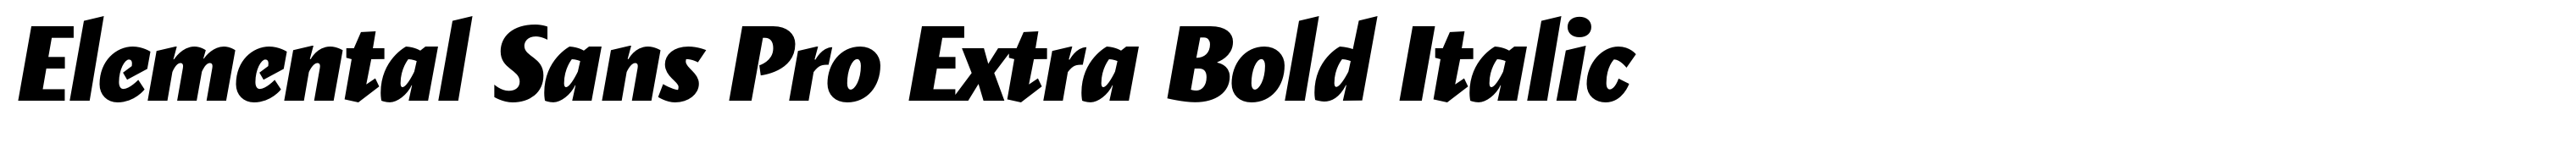 Elemental Sans Pro Extra Bold Italic